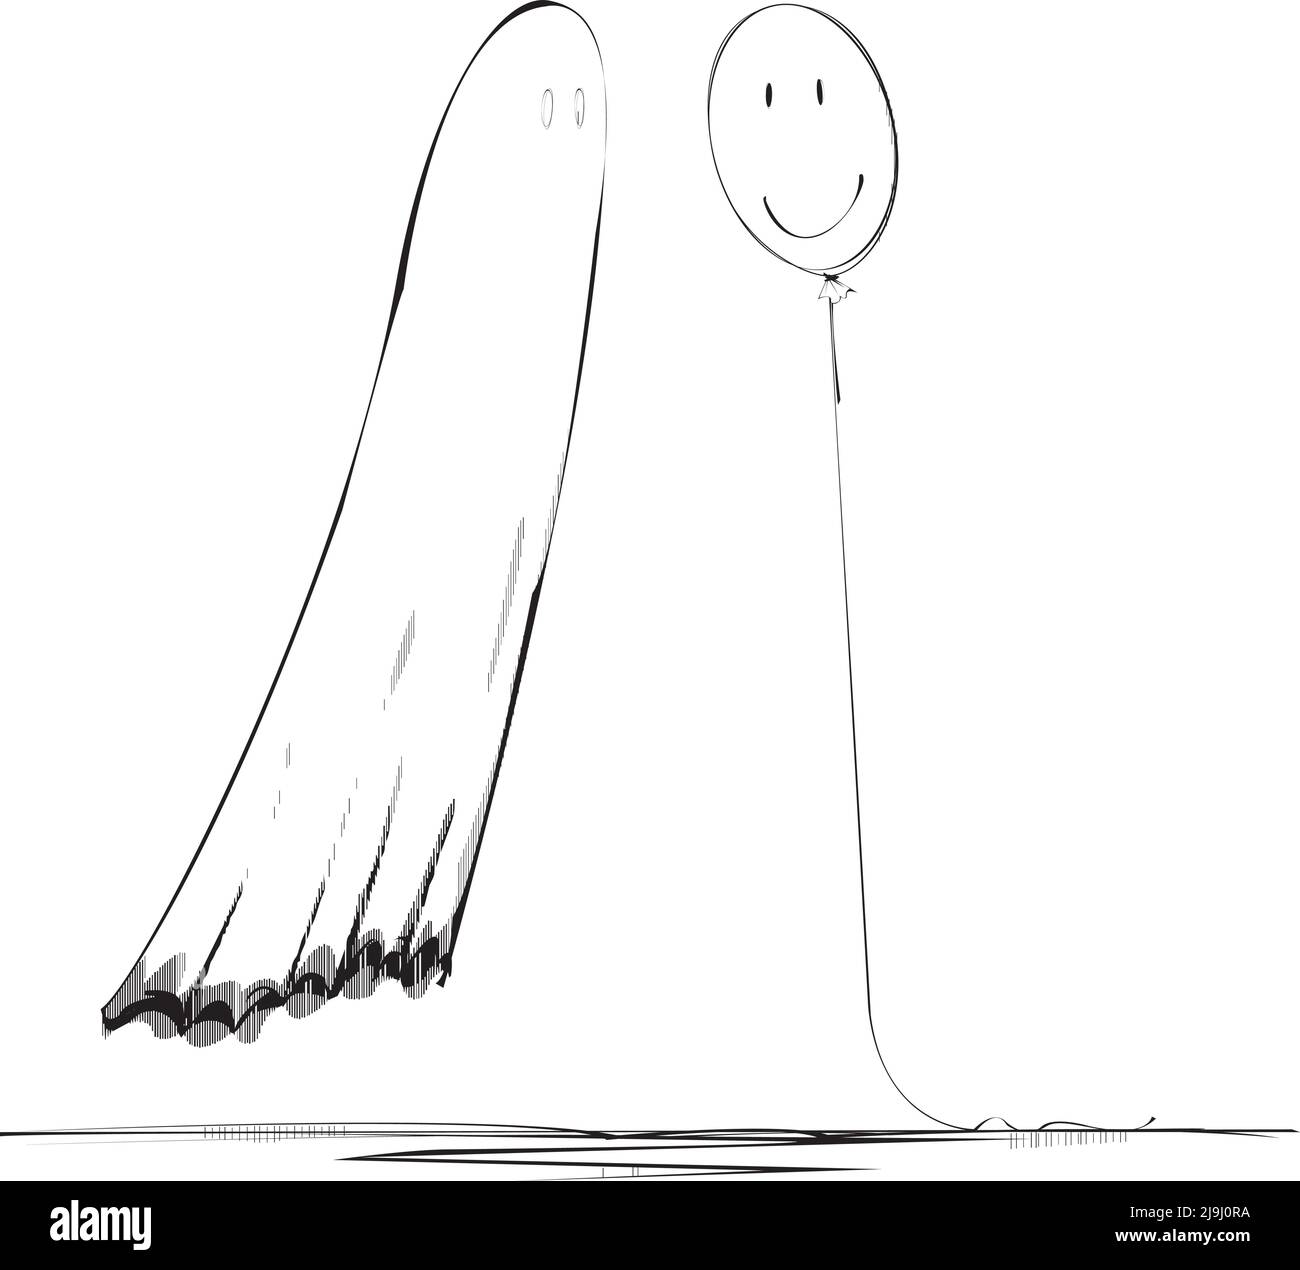 Un fantôme rencontre son compagnon d'âme de ballon Illustration de Vecteur